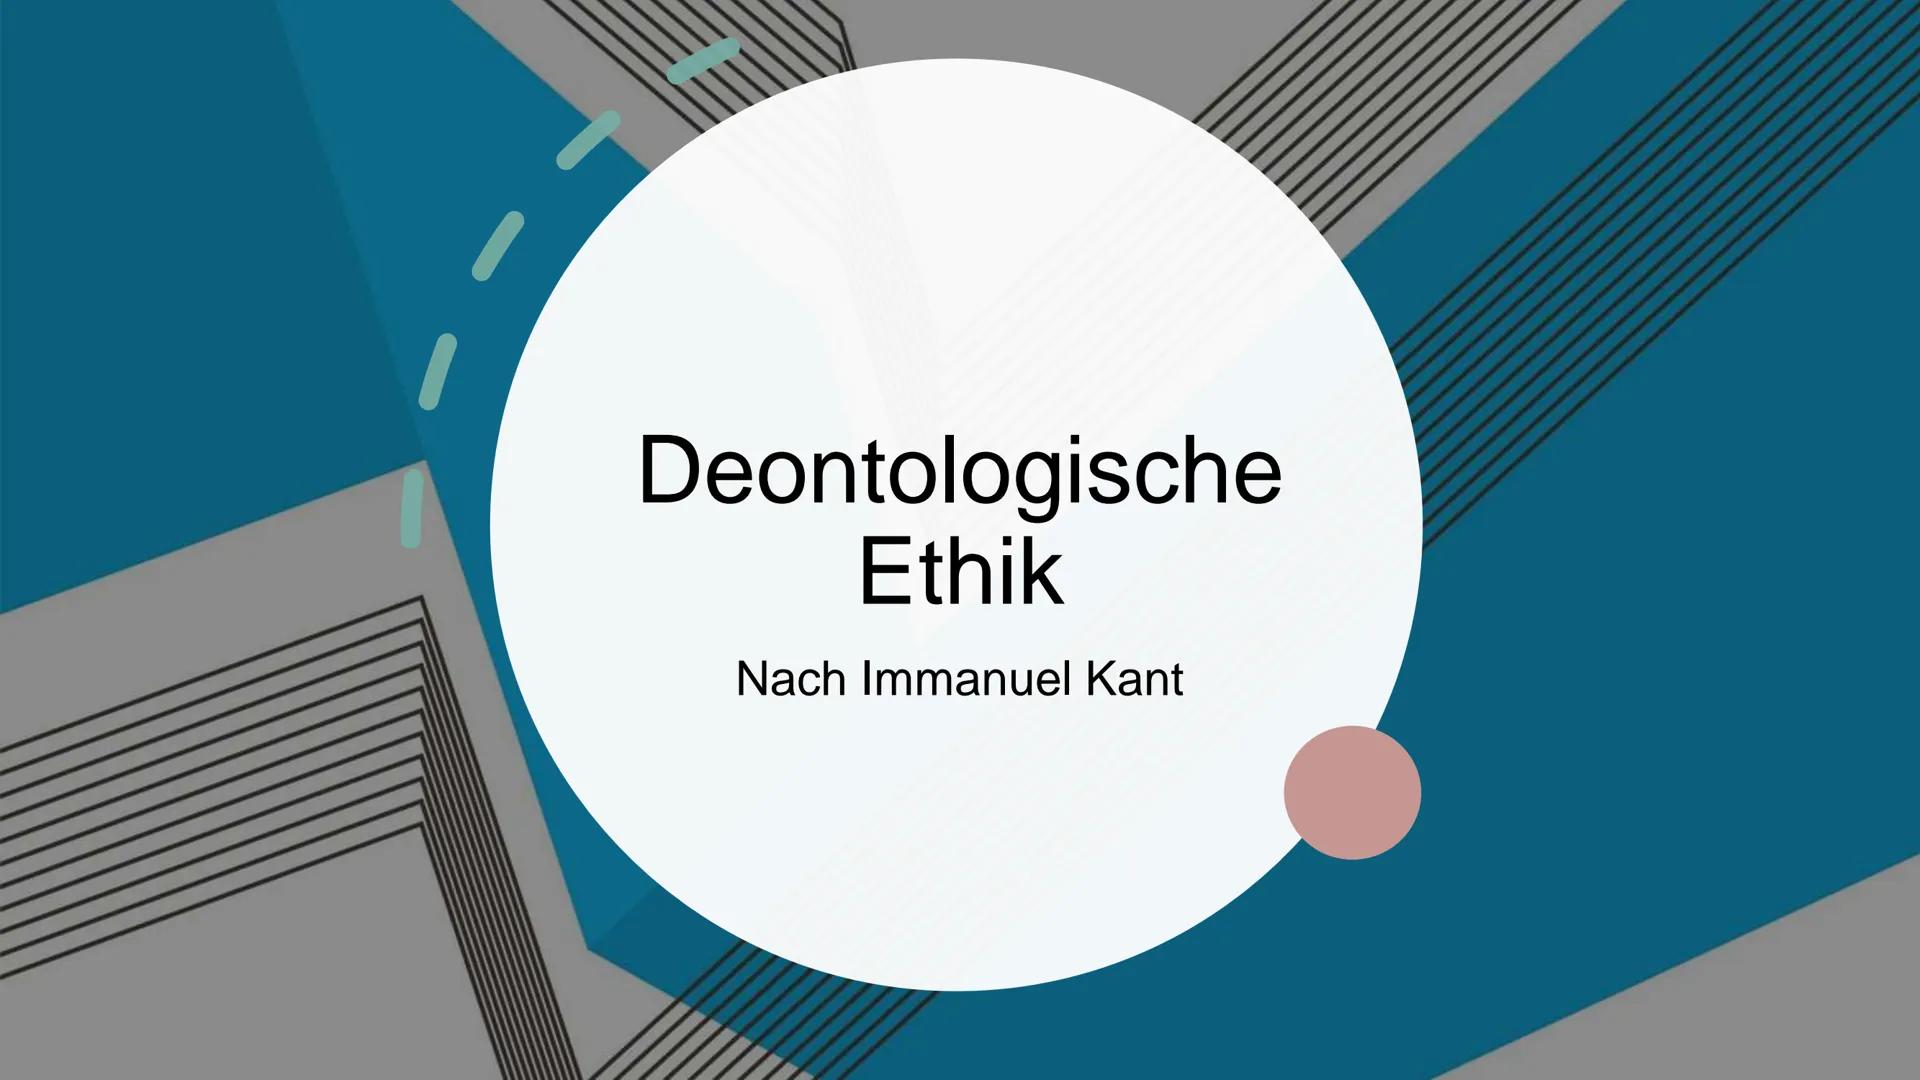 Deontologische
Ethik
Nach Immanuel Kant Deontologische Ethik
Die Theorien der deontologischen Ethik (griech. Séov, déon, „das Erforderliche,